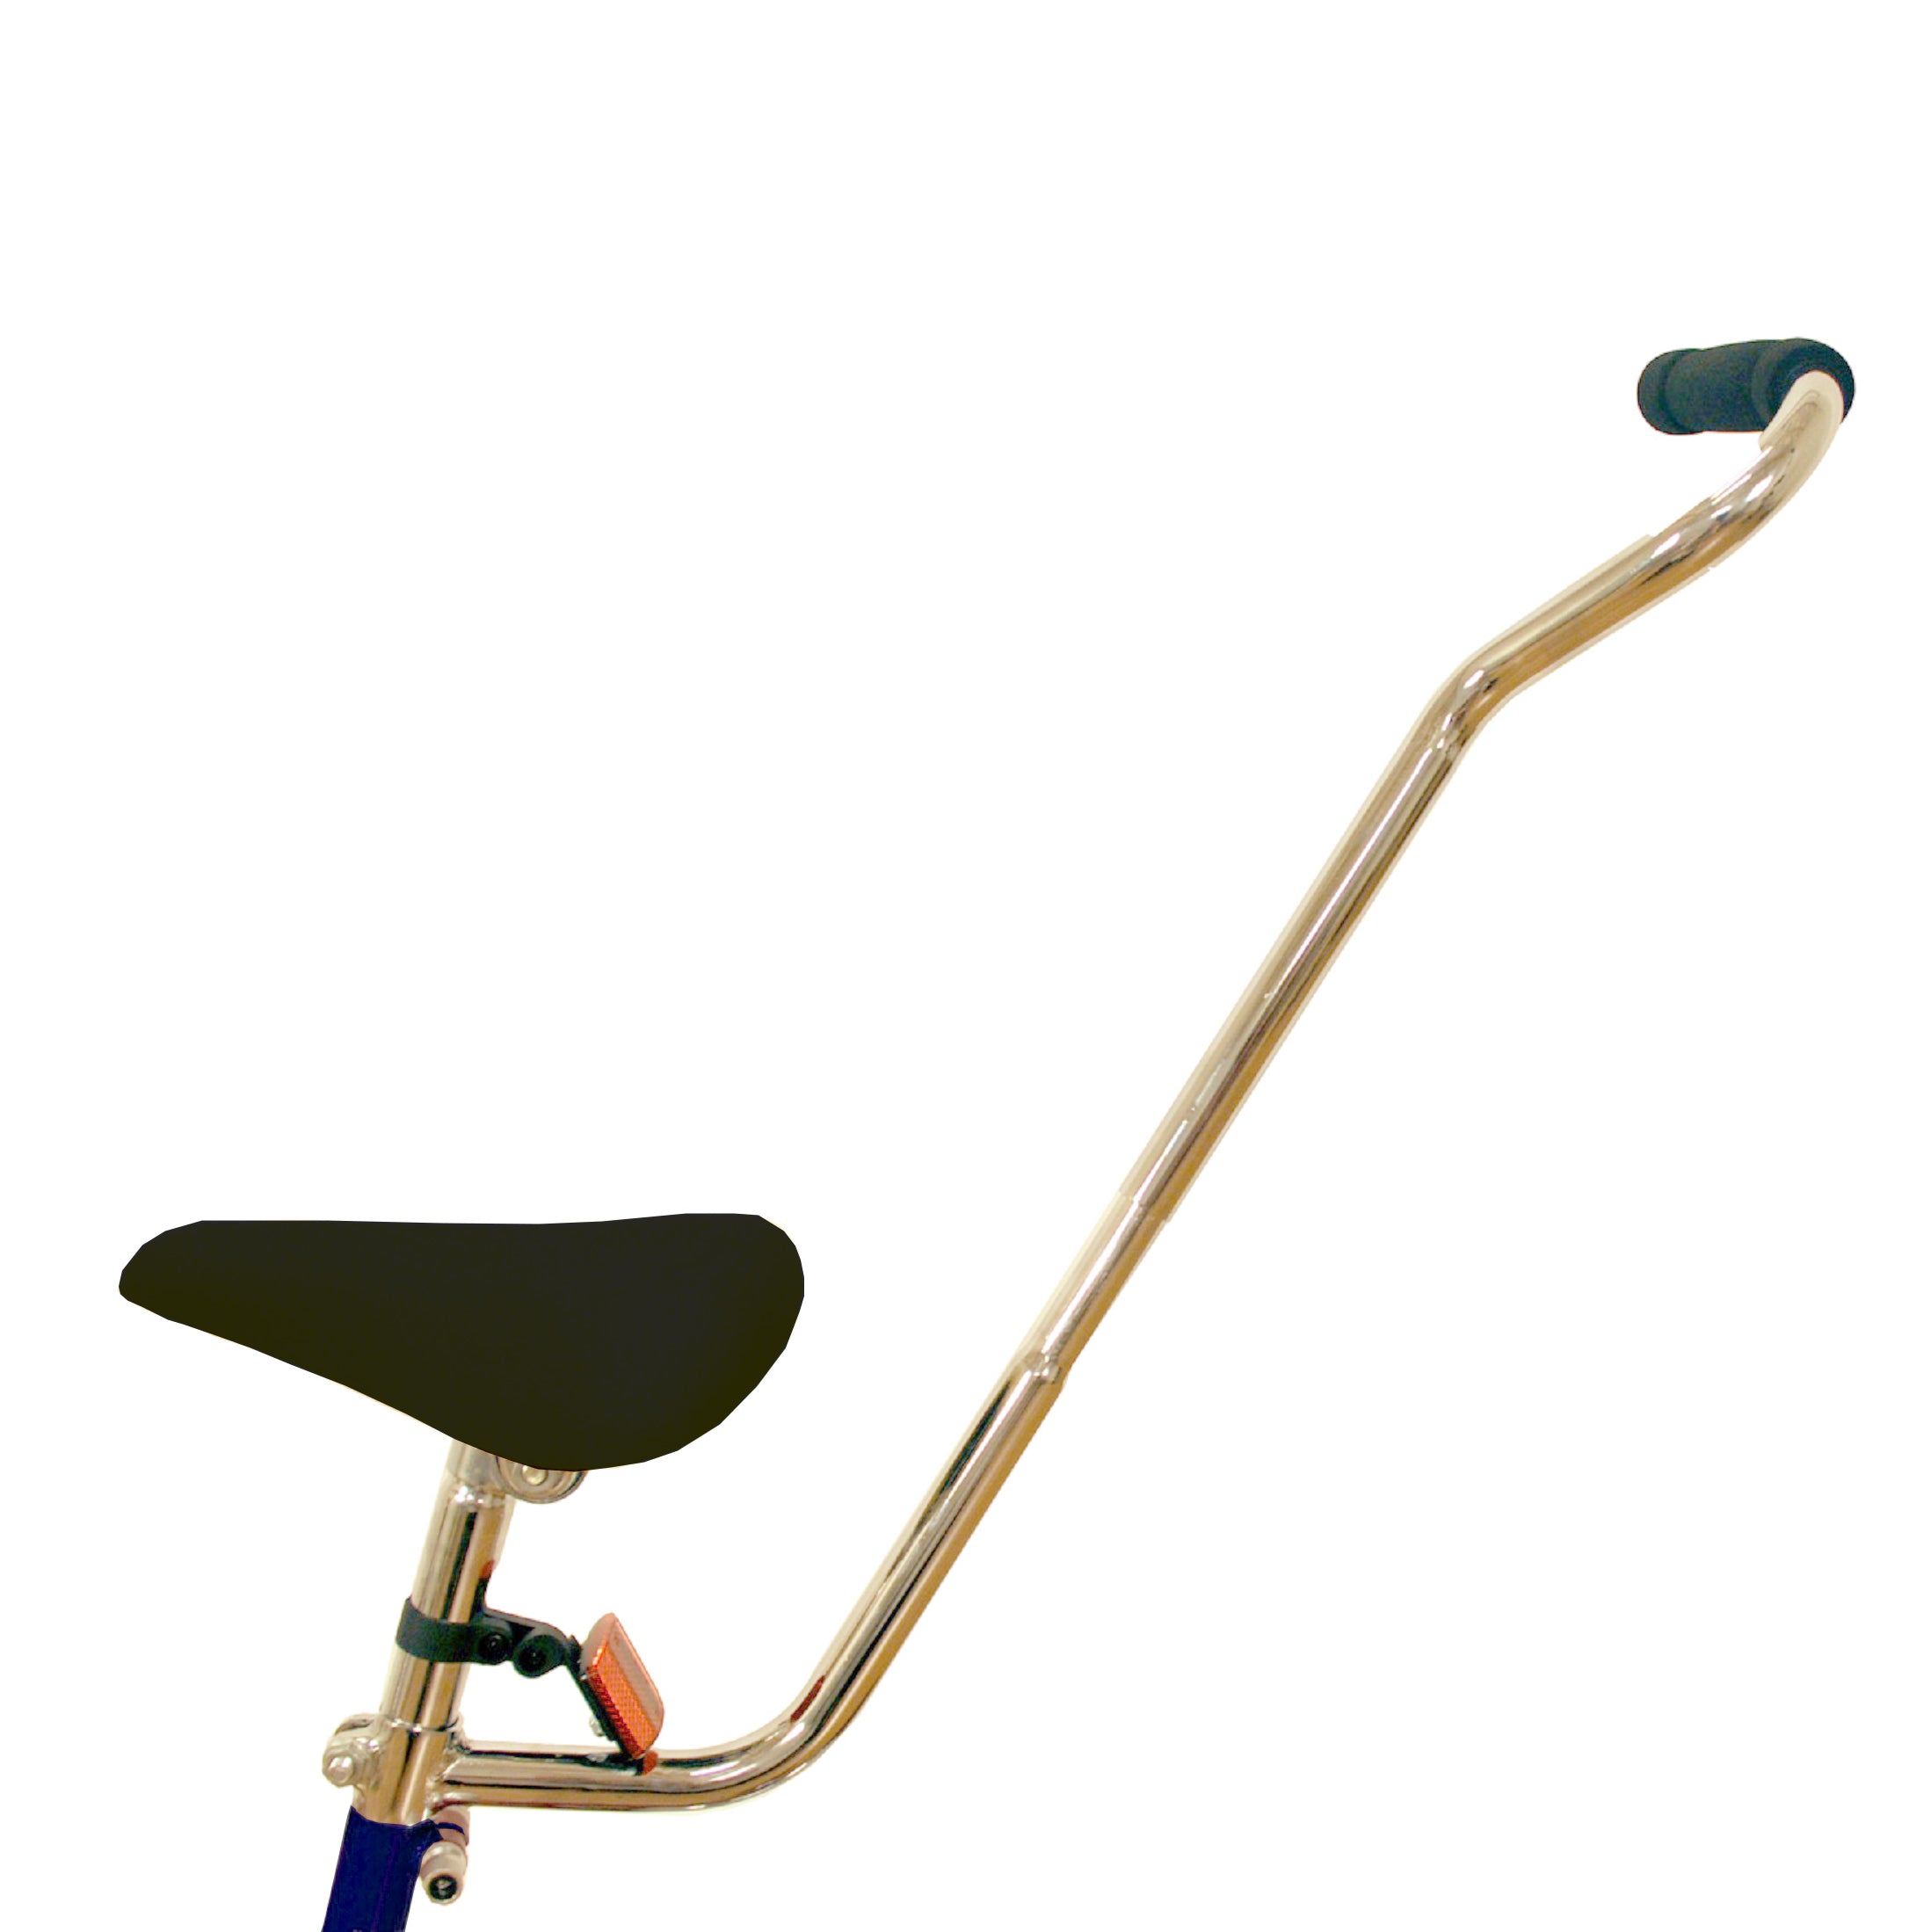 Adult pushbar of the Kettler 12 Inch Racer Balance Bike.